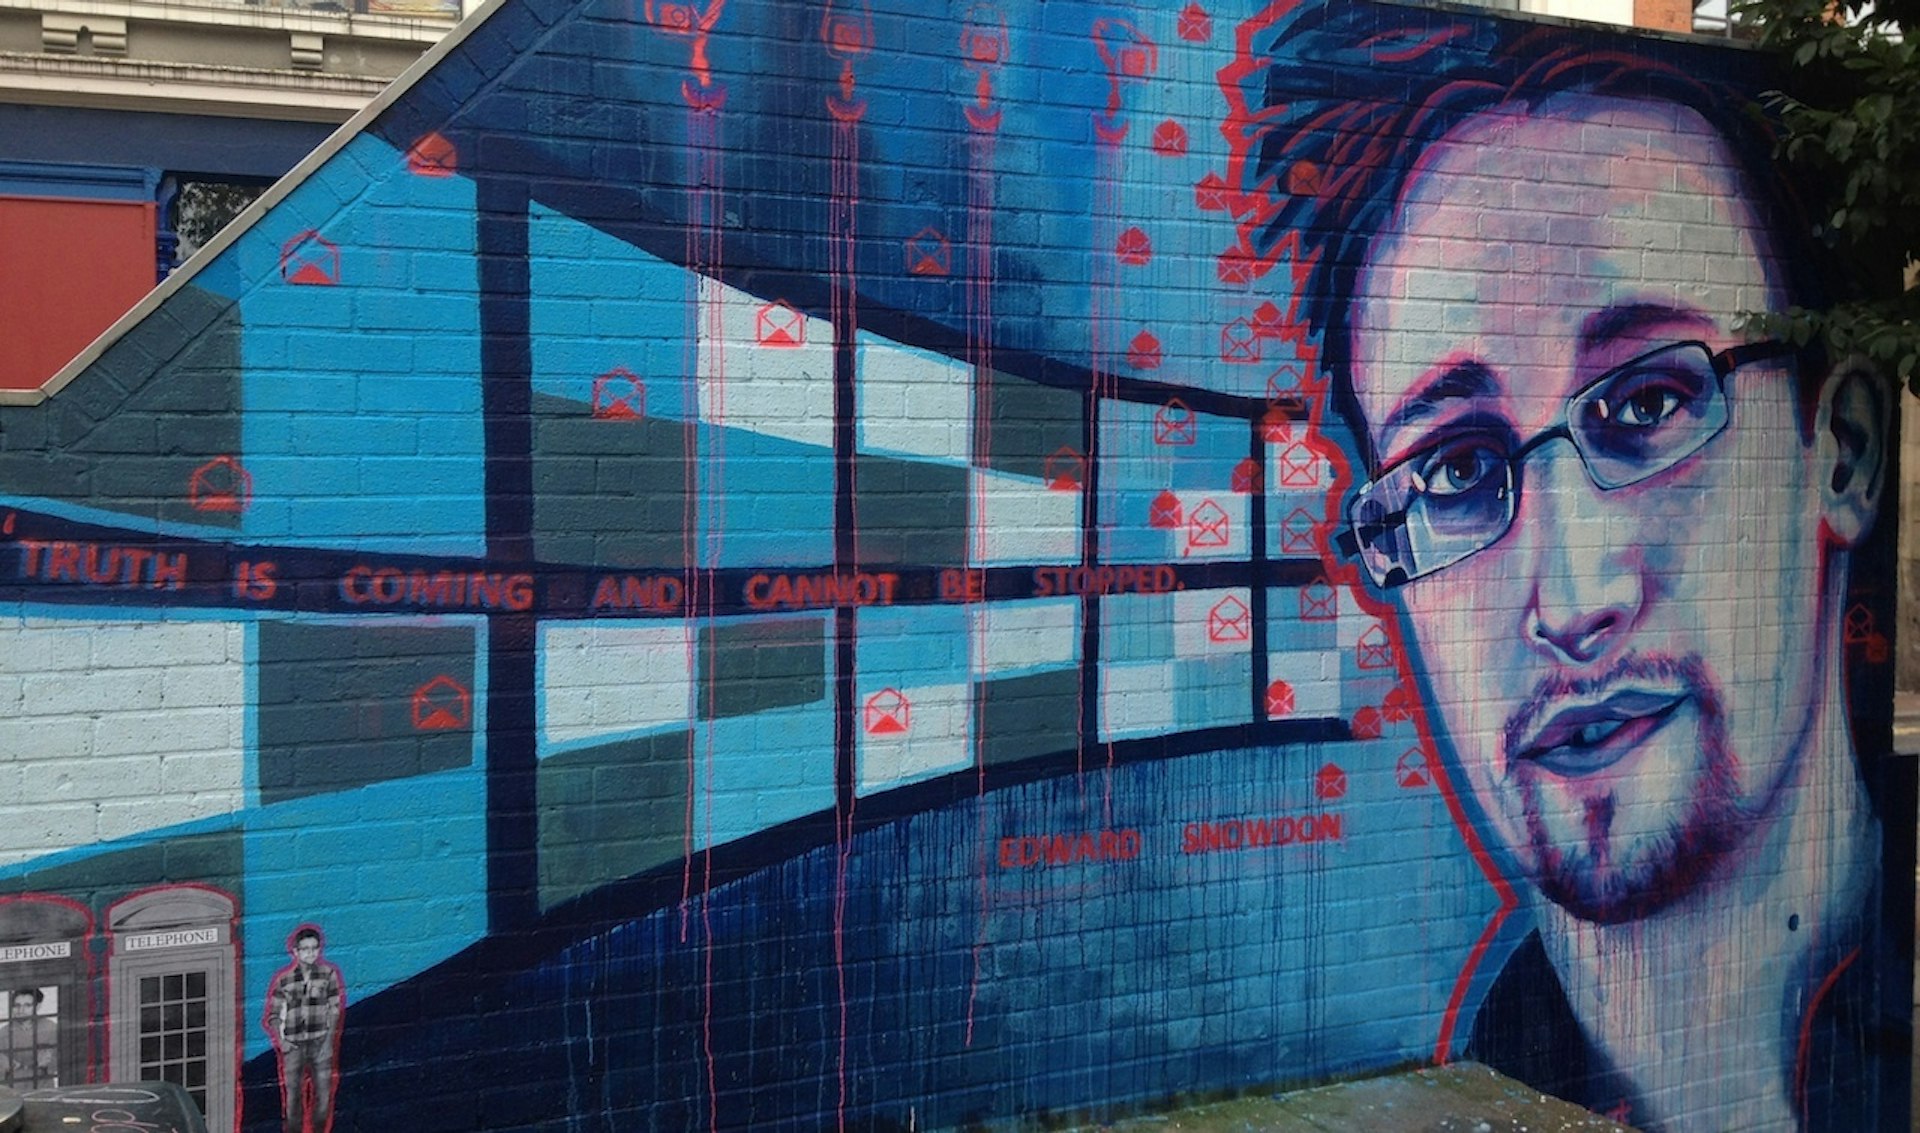 Edward Snowden Speaks